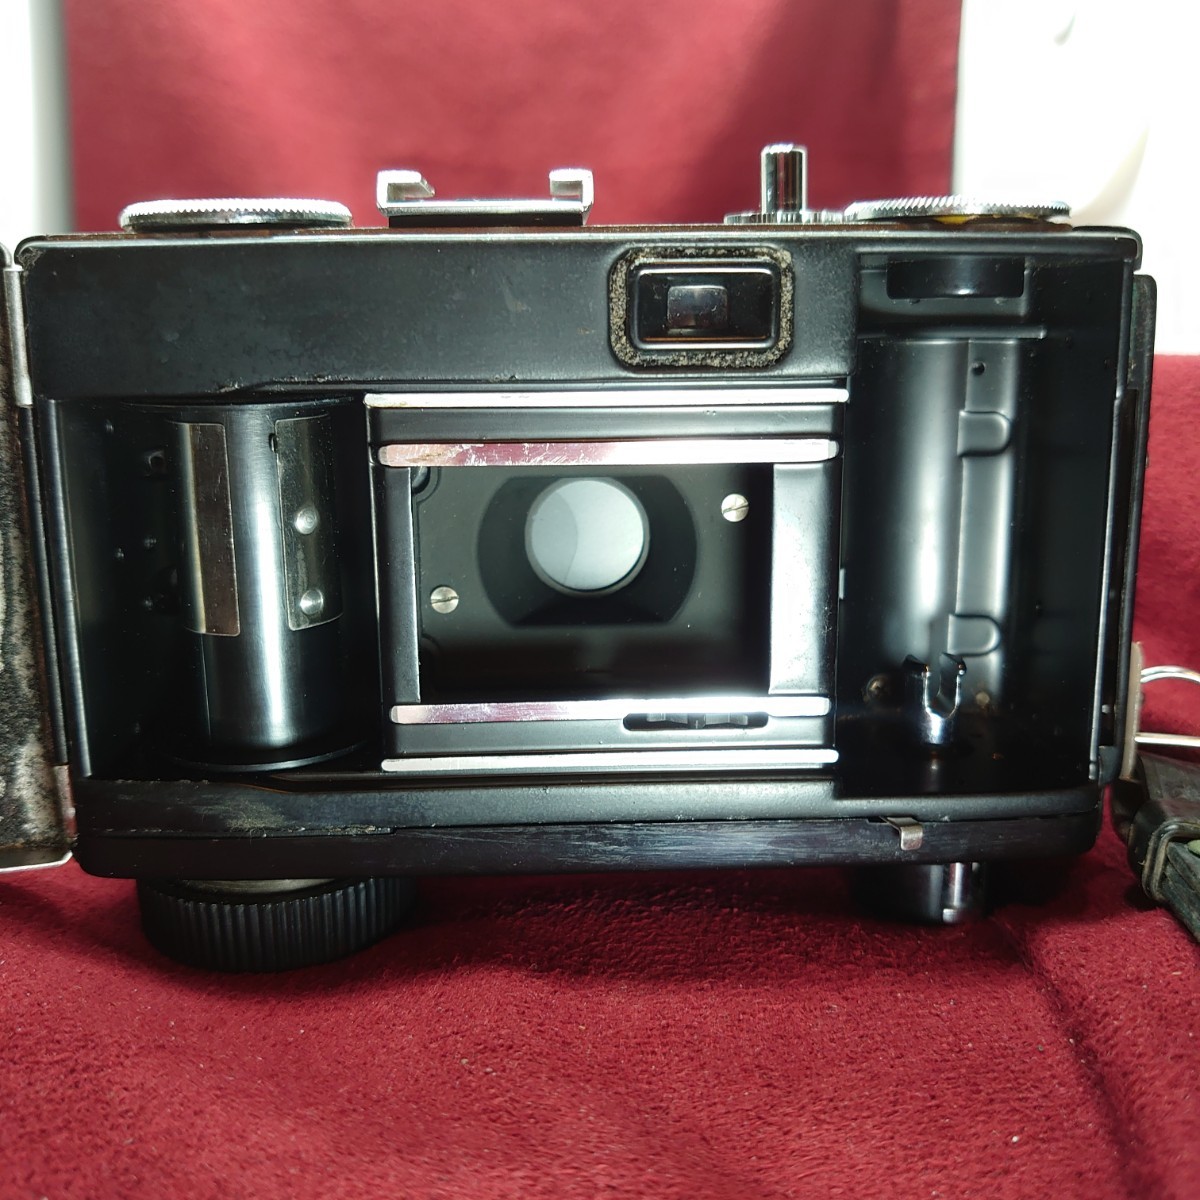 J11【シャッターOK】RICOH HI-COLOR 35S コンパクトフィルムカメラ リコー ハイカラー LENS RIKENON F:2.8 35mm 昭和レトロ ビンテージ_画像9